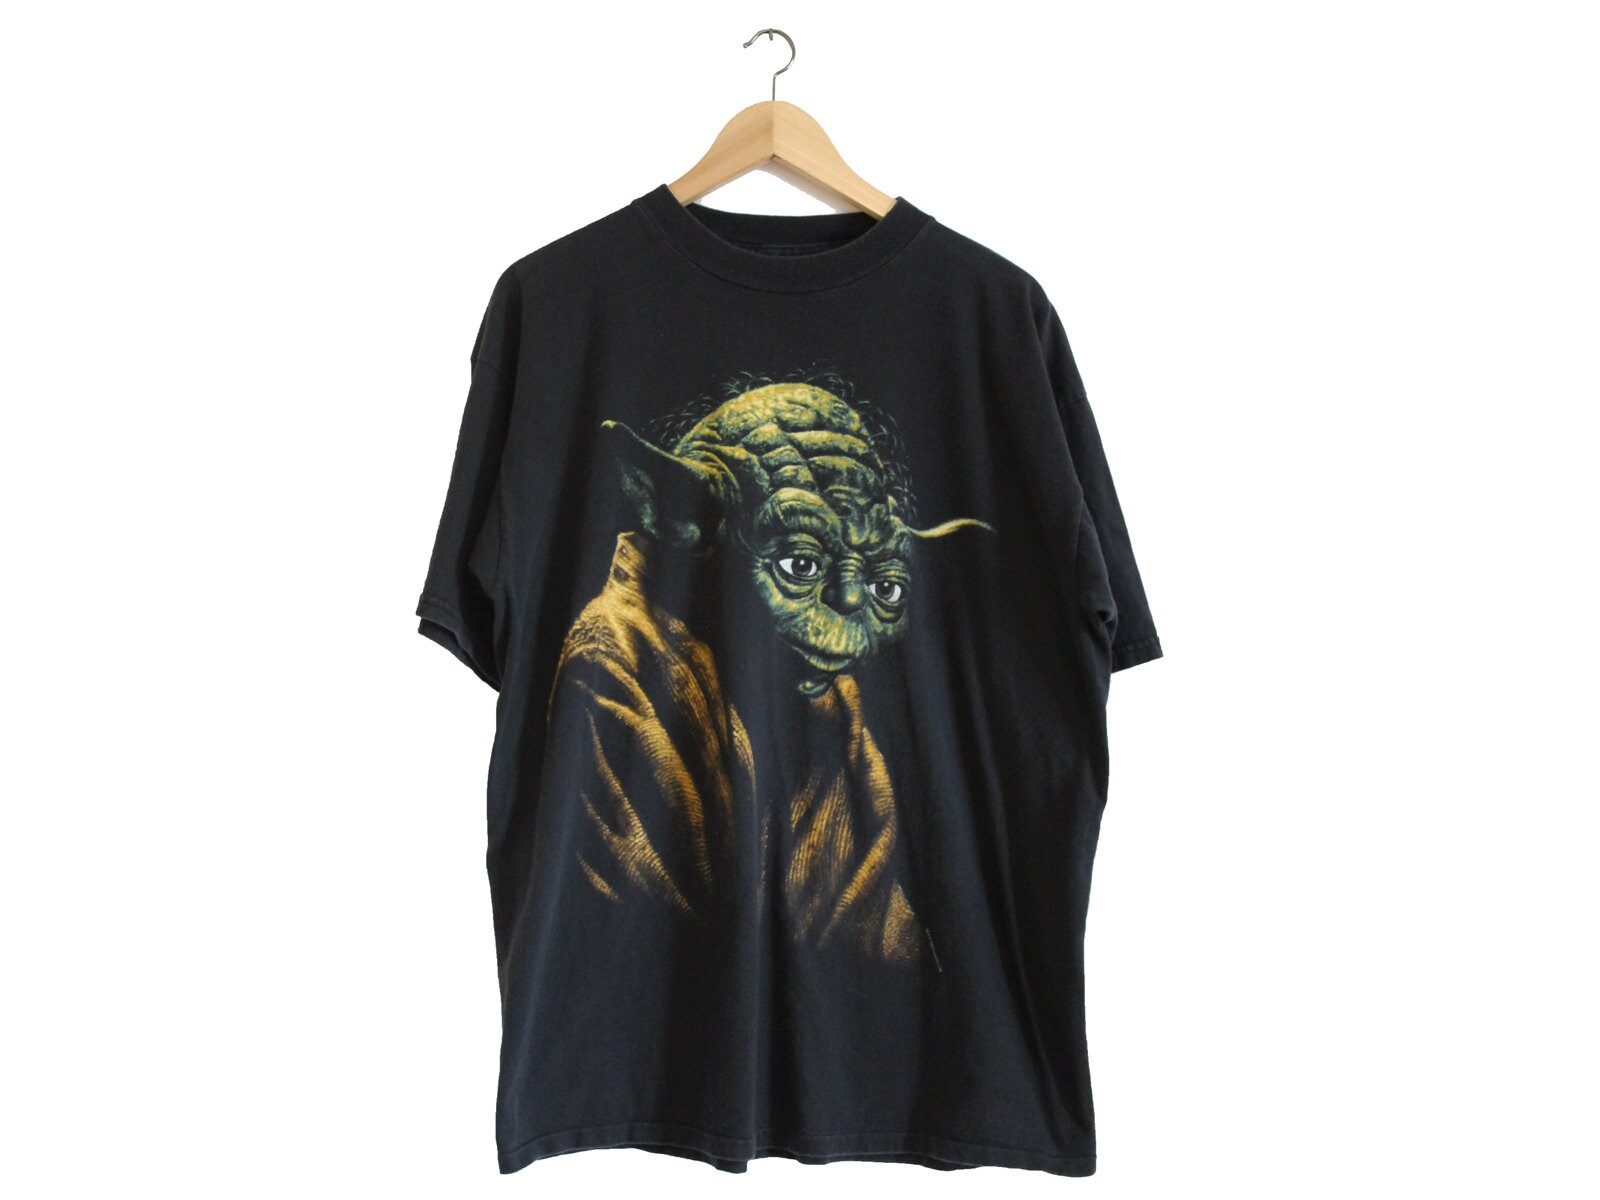 Vintage Yoda Tee